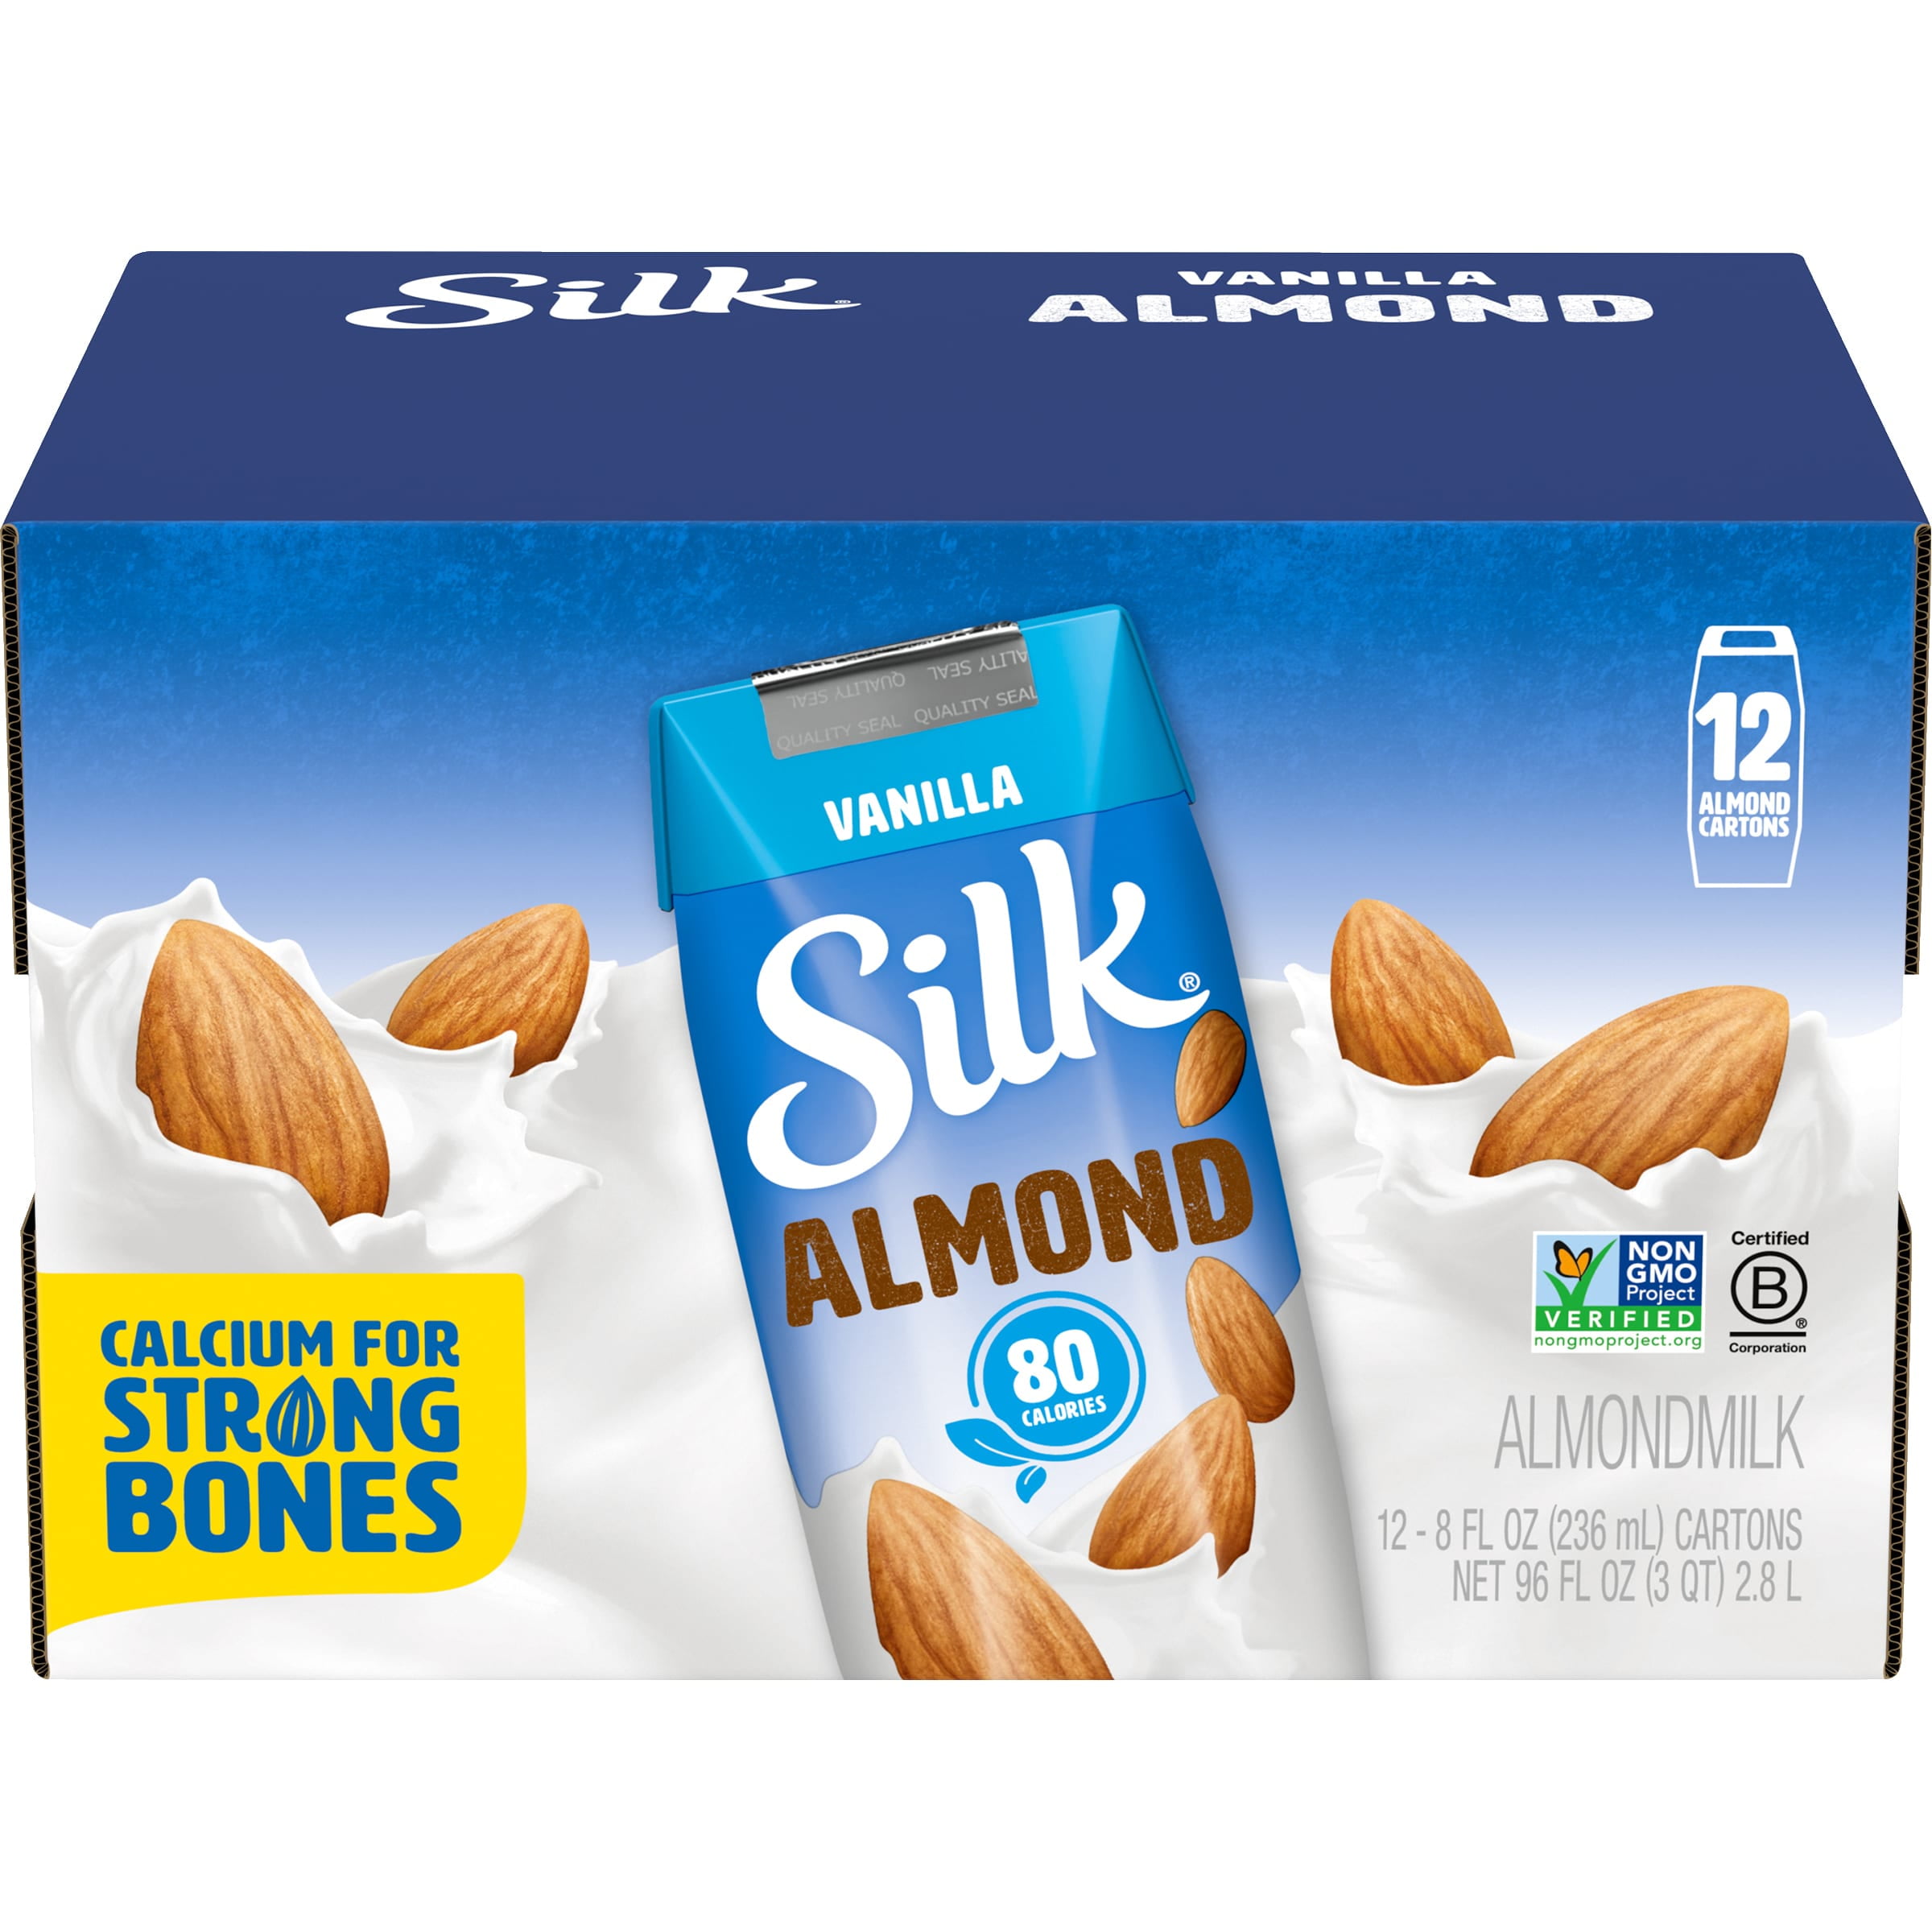 Silk® Vanilla Almond Creamer 1 pt. Carton, Shop